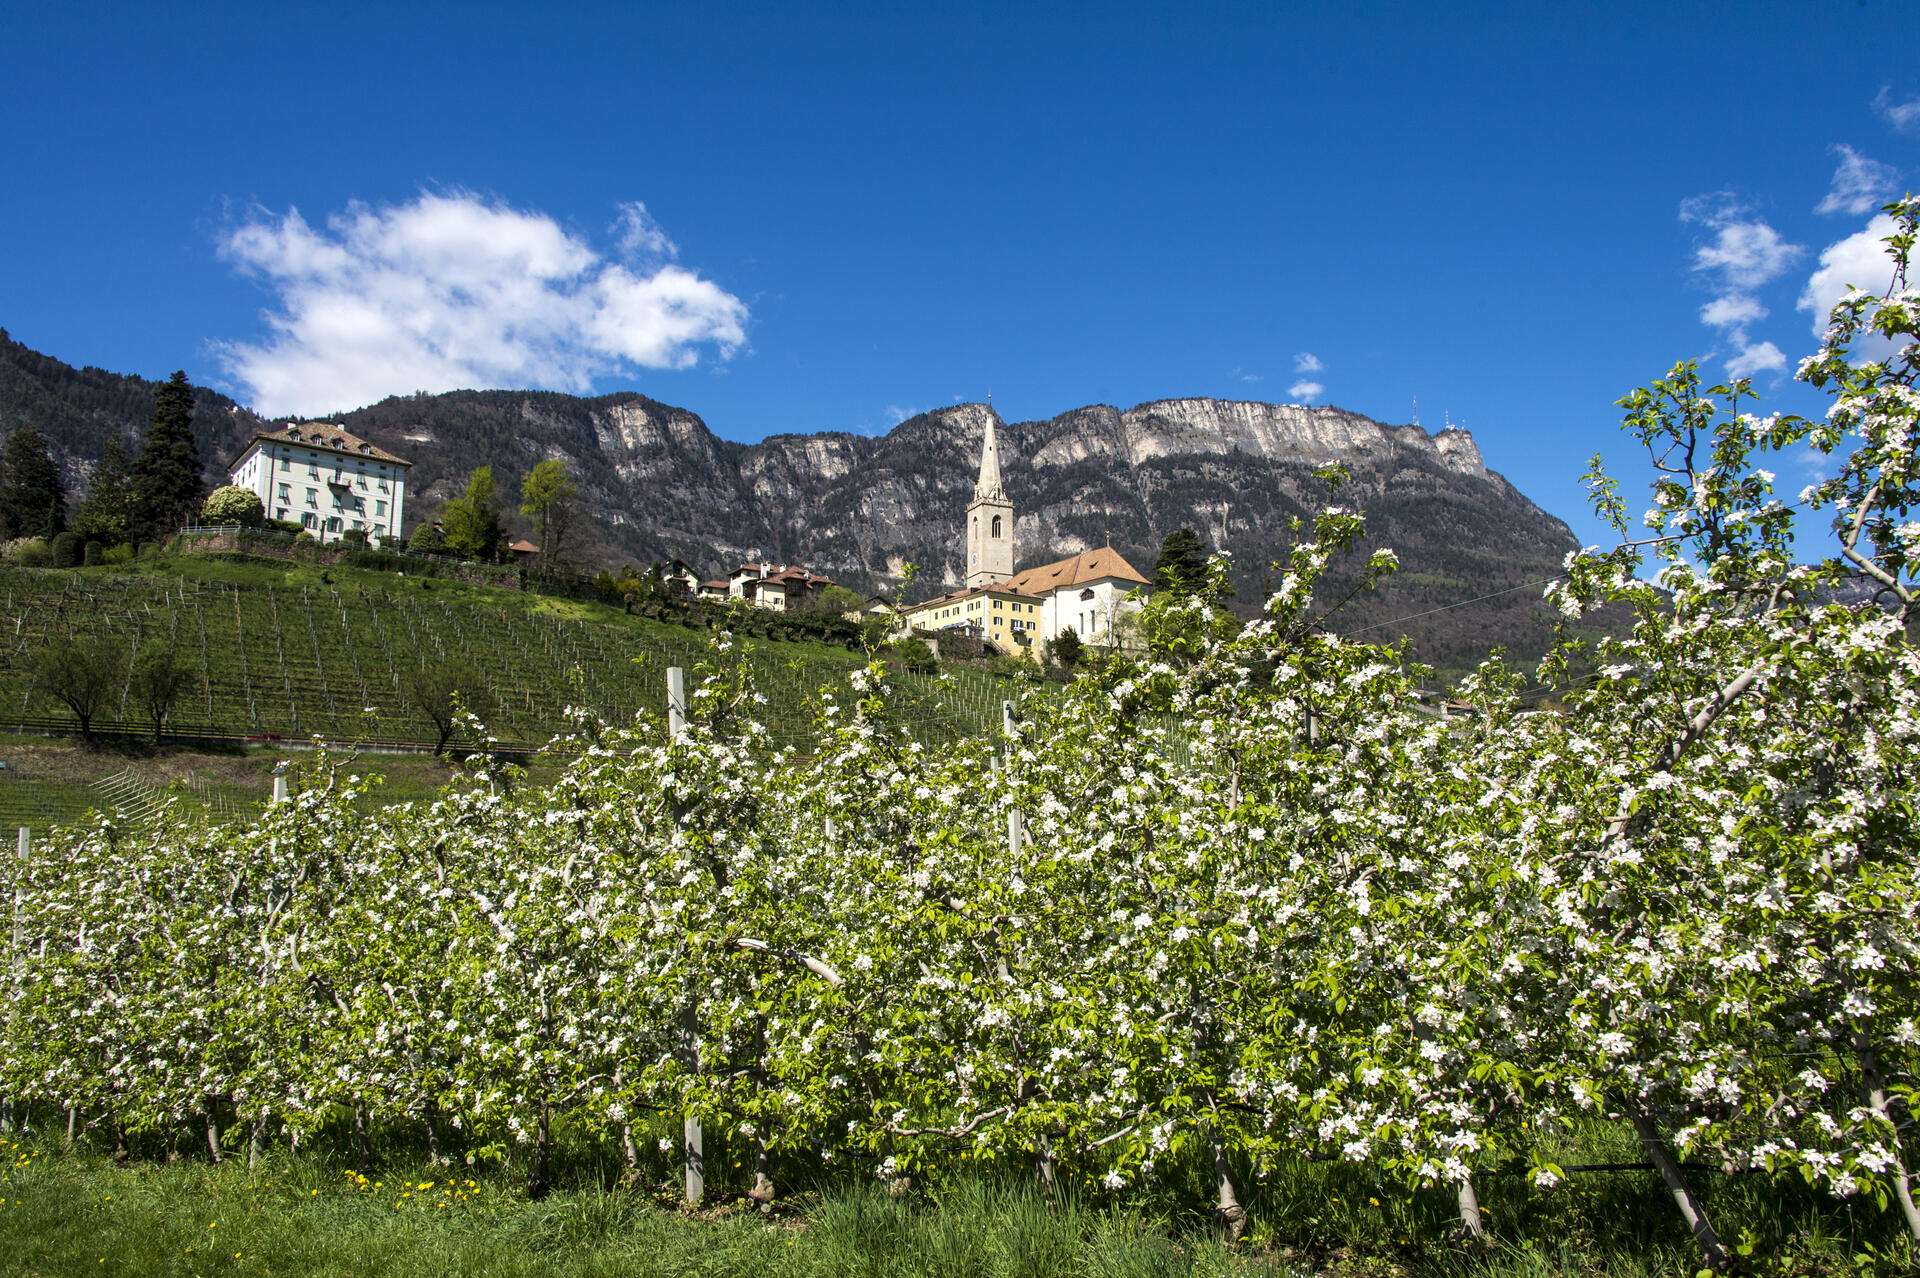 Apfelplantage in Blüte